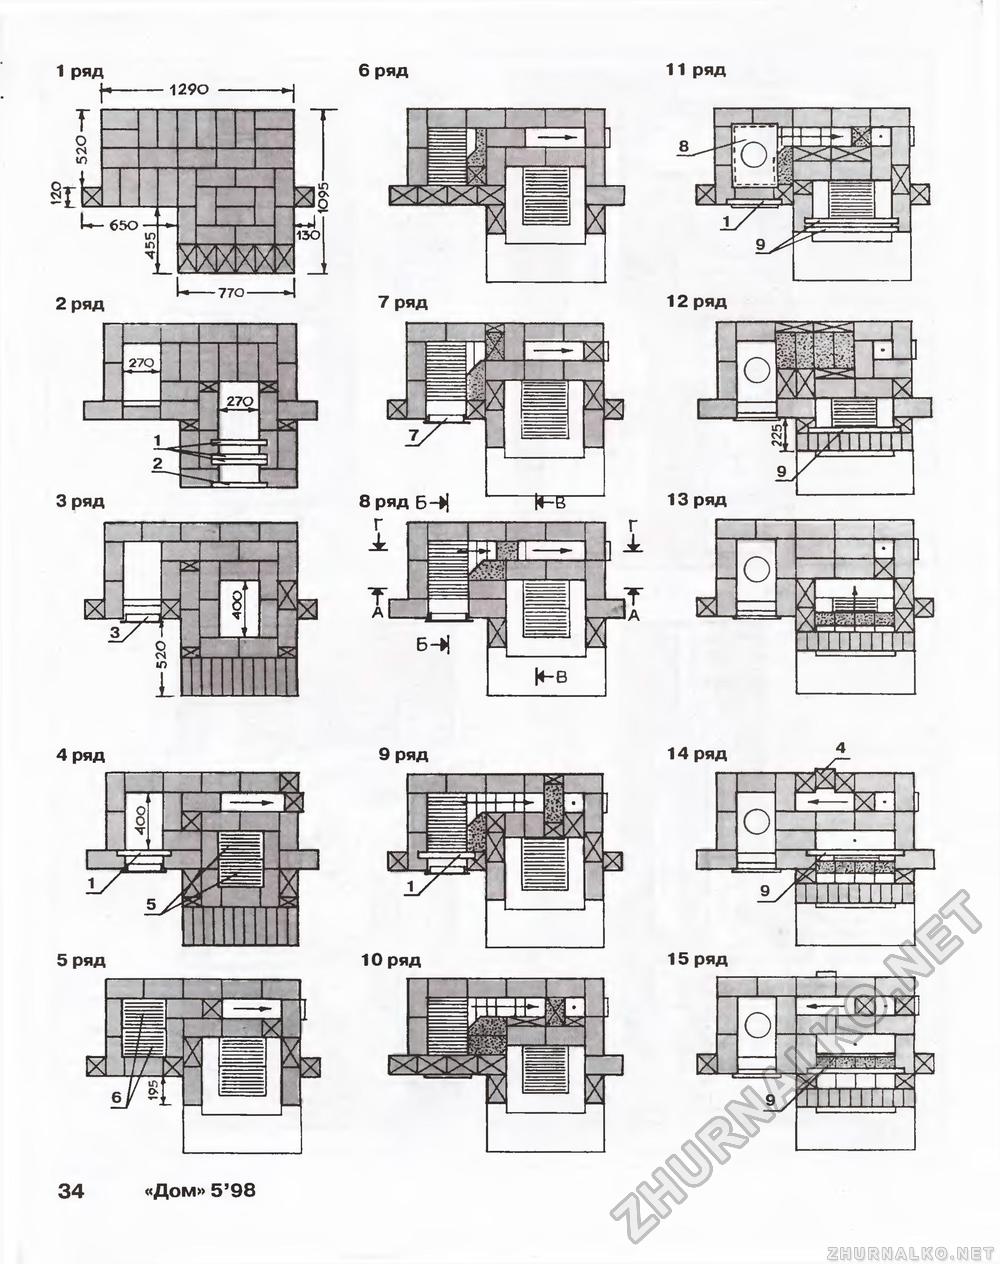 Дом 1998-05, страница 34